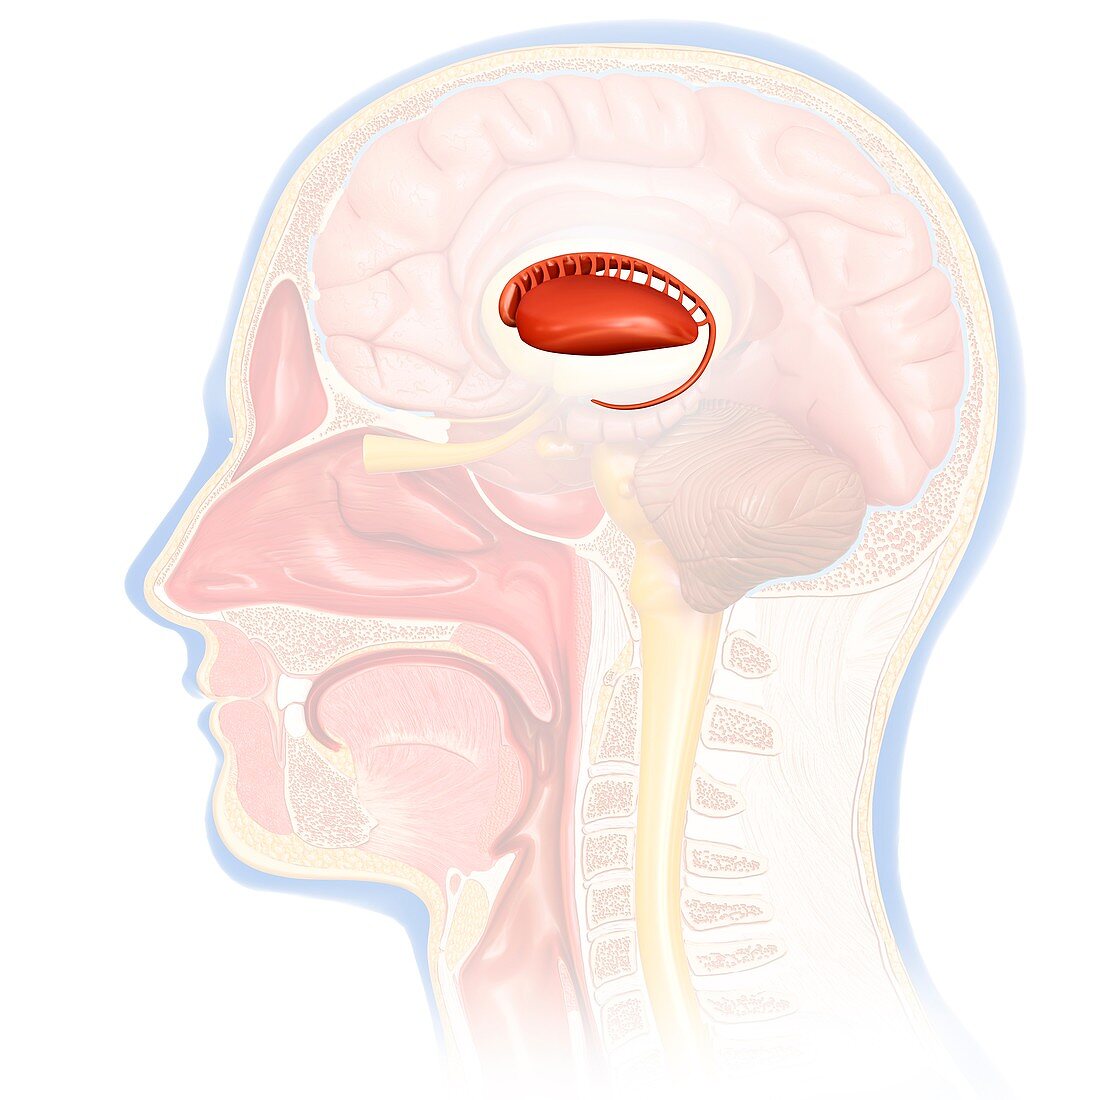 Human brain caudate nucleus, illustration